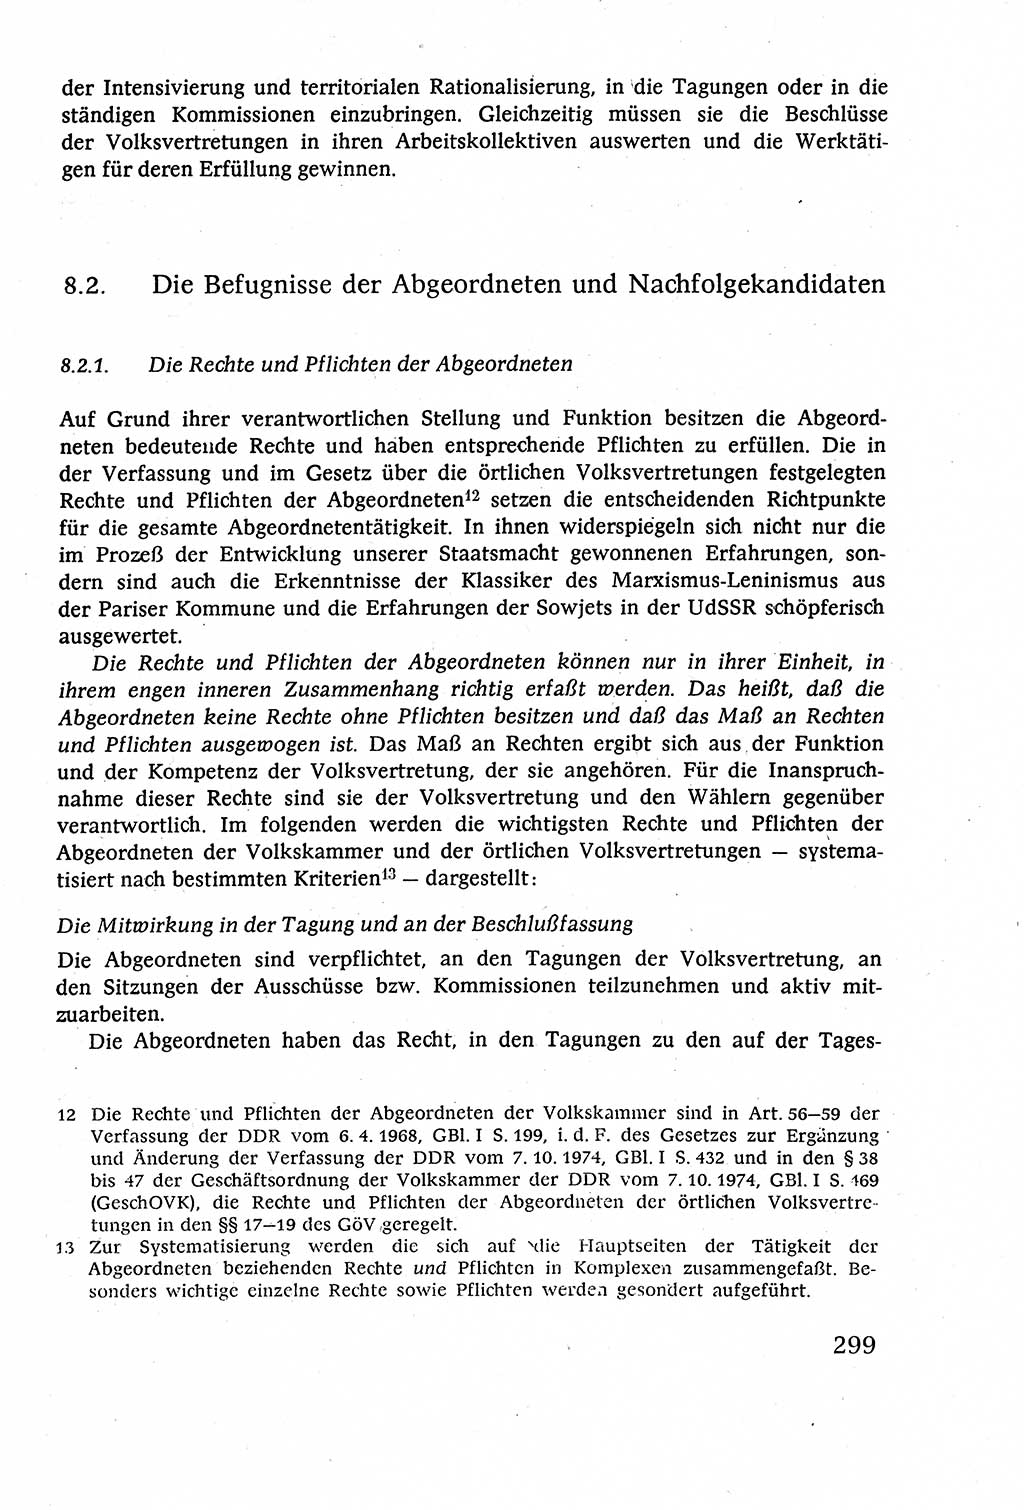 Staatsrecht der DDR (Deutsche Demokratische Republik), Lehrbuch 1977, Seite 299 (St.-R. DDR Lb. 1977, S. 299)